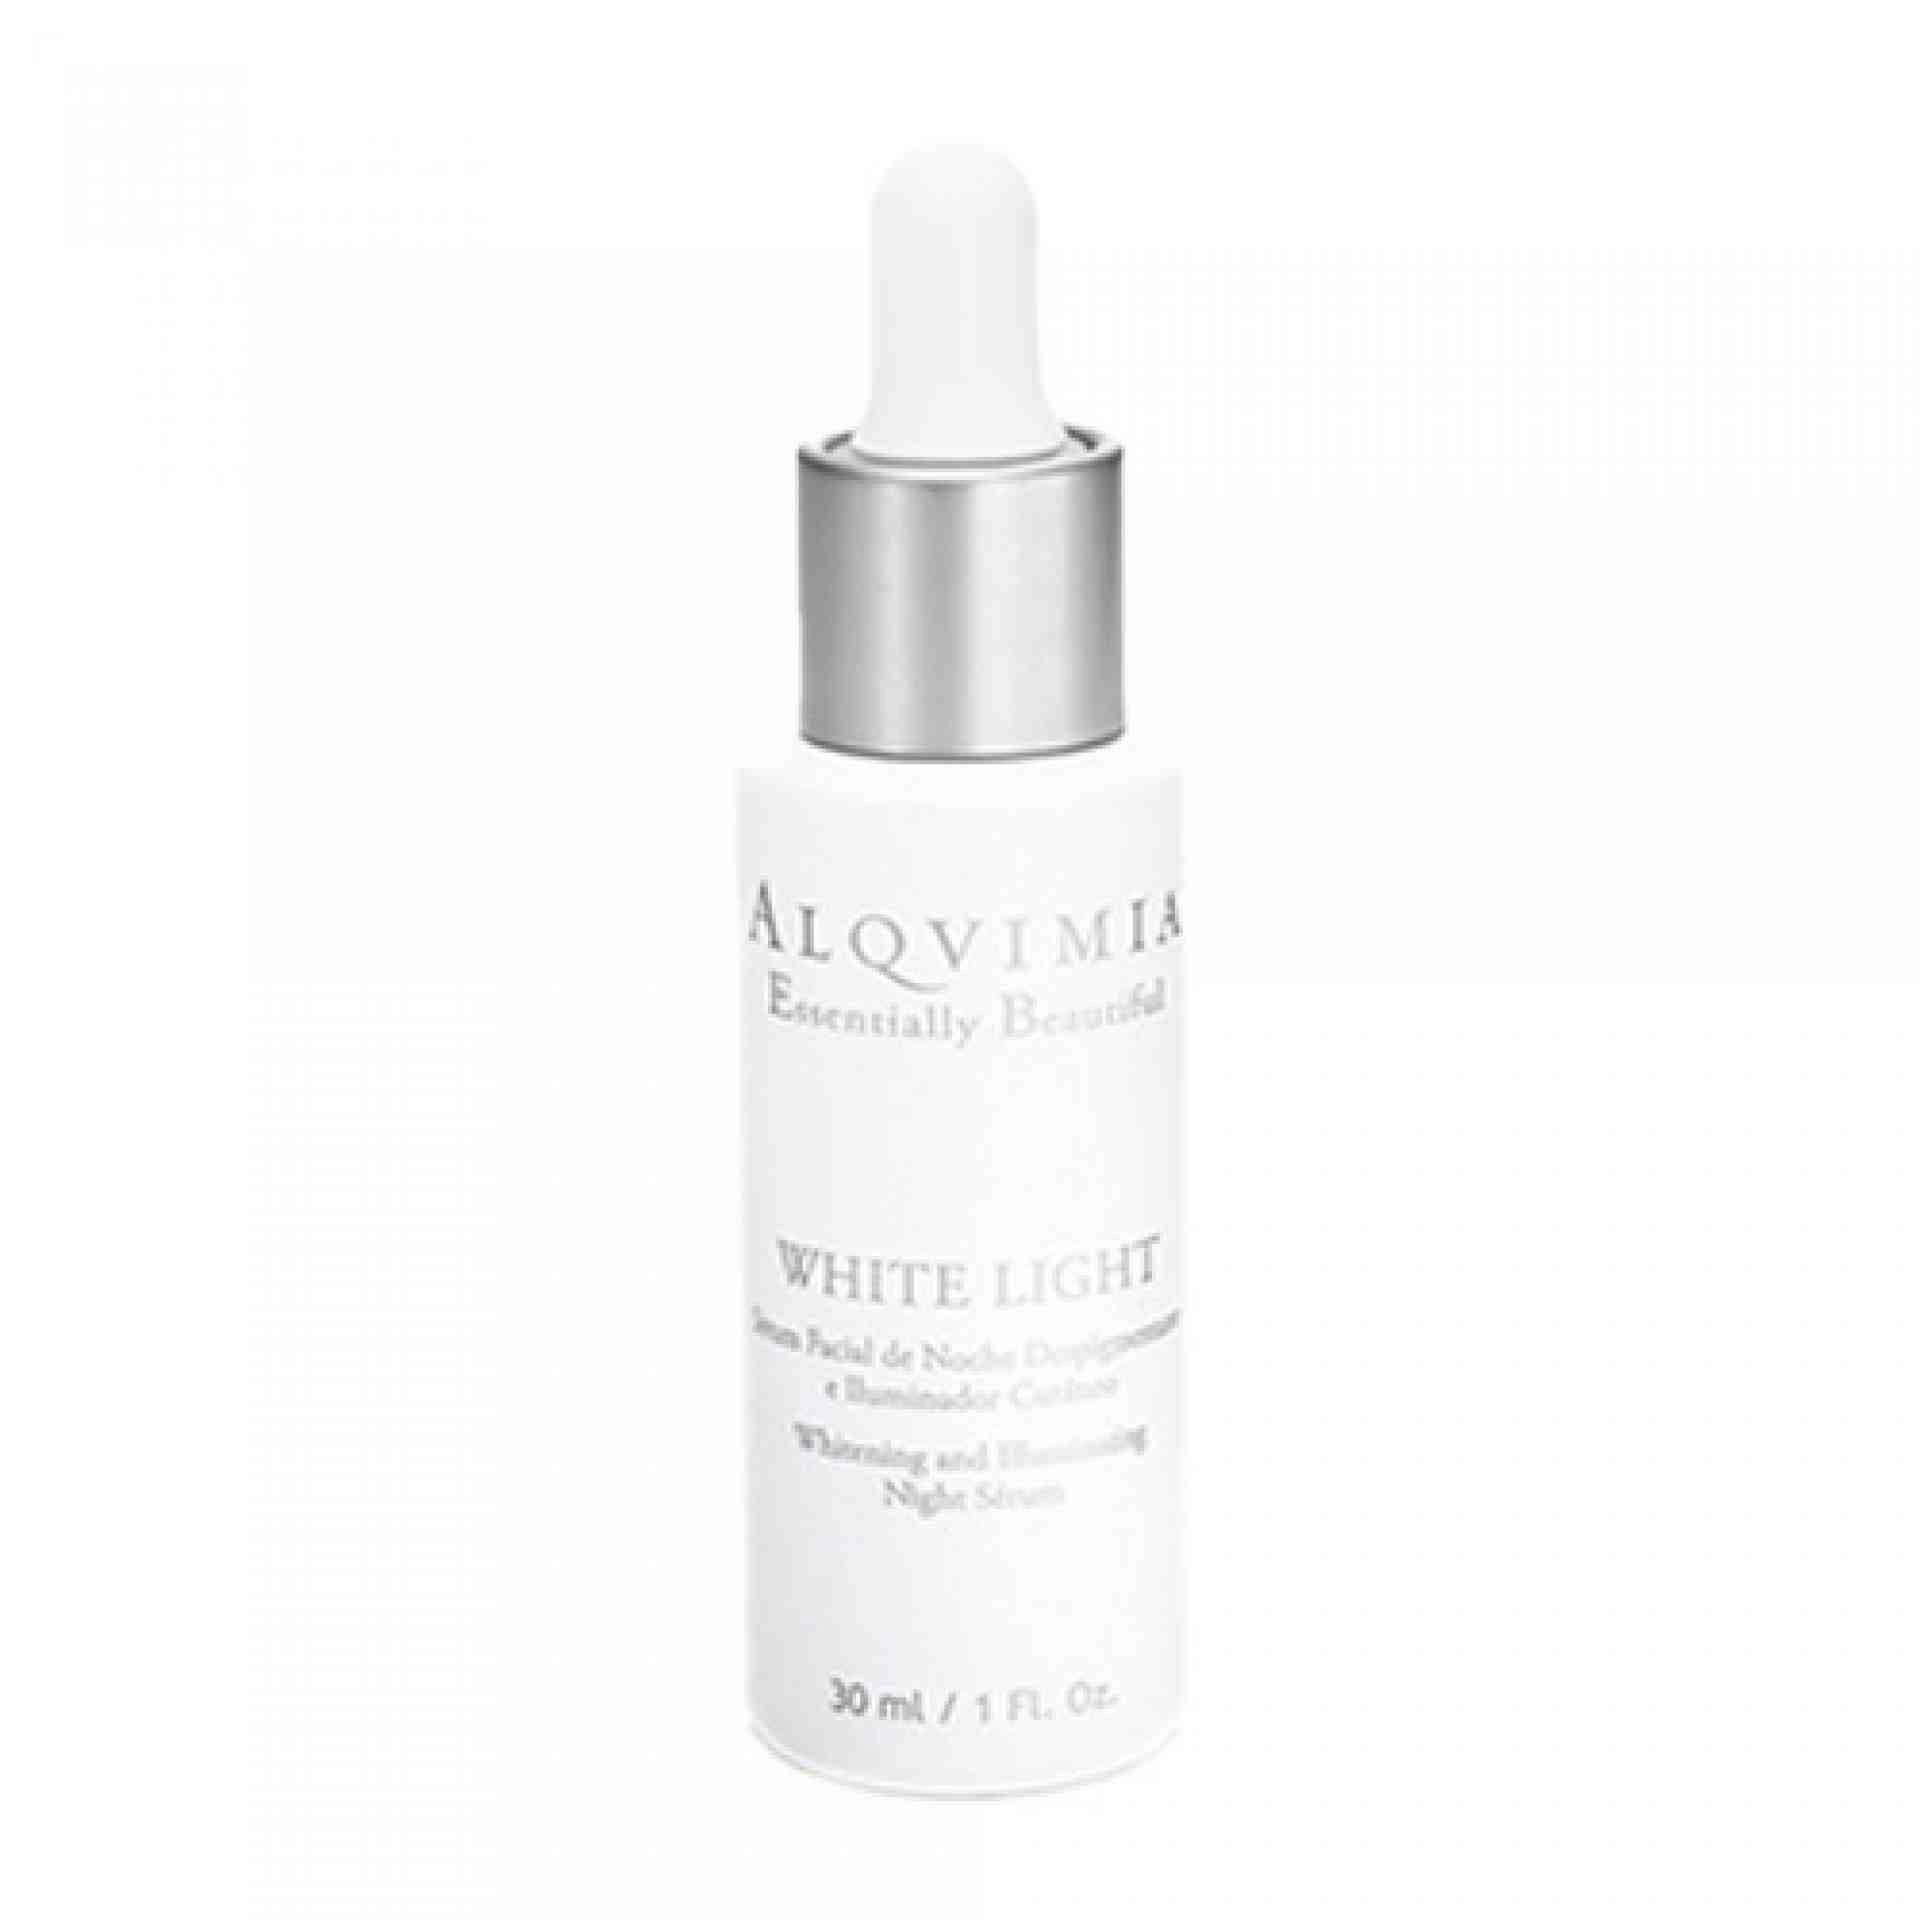 White Light I Sérum facial despigmentante 30ml - Essentially Beautiful - Alqvimia ®